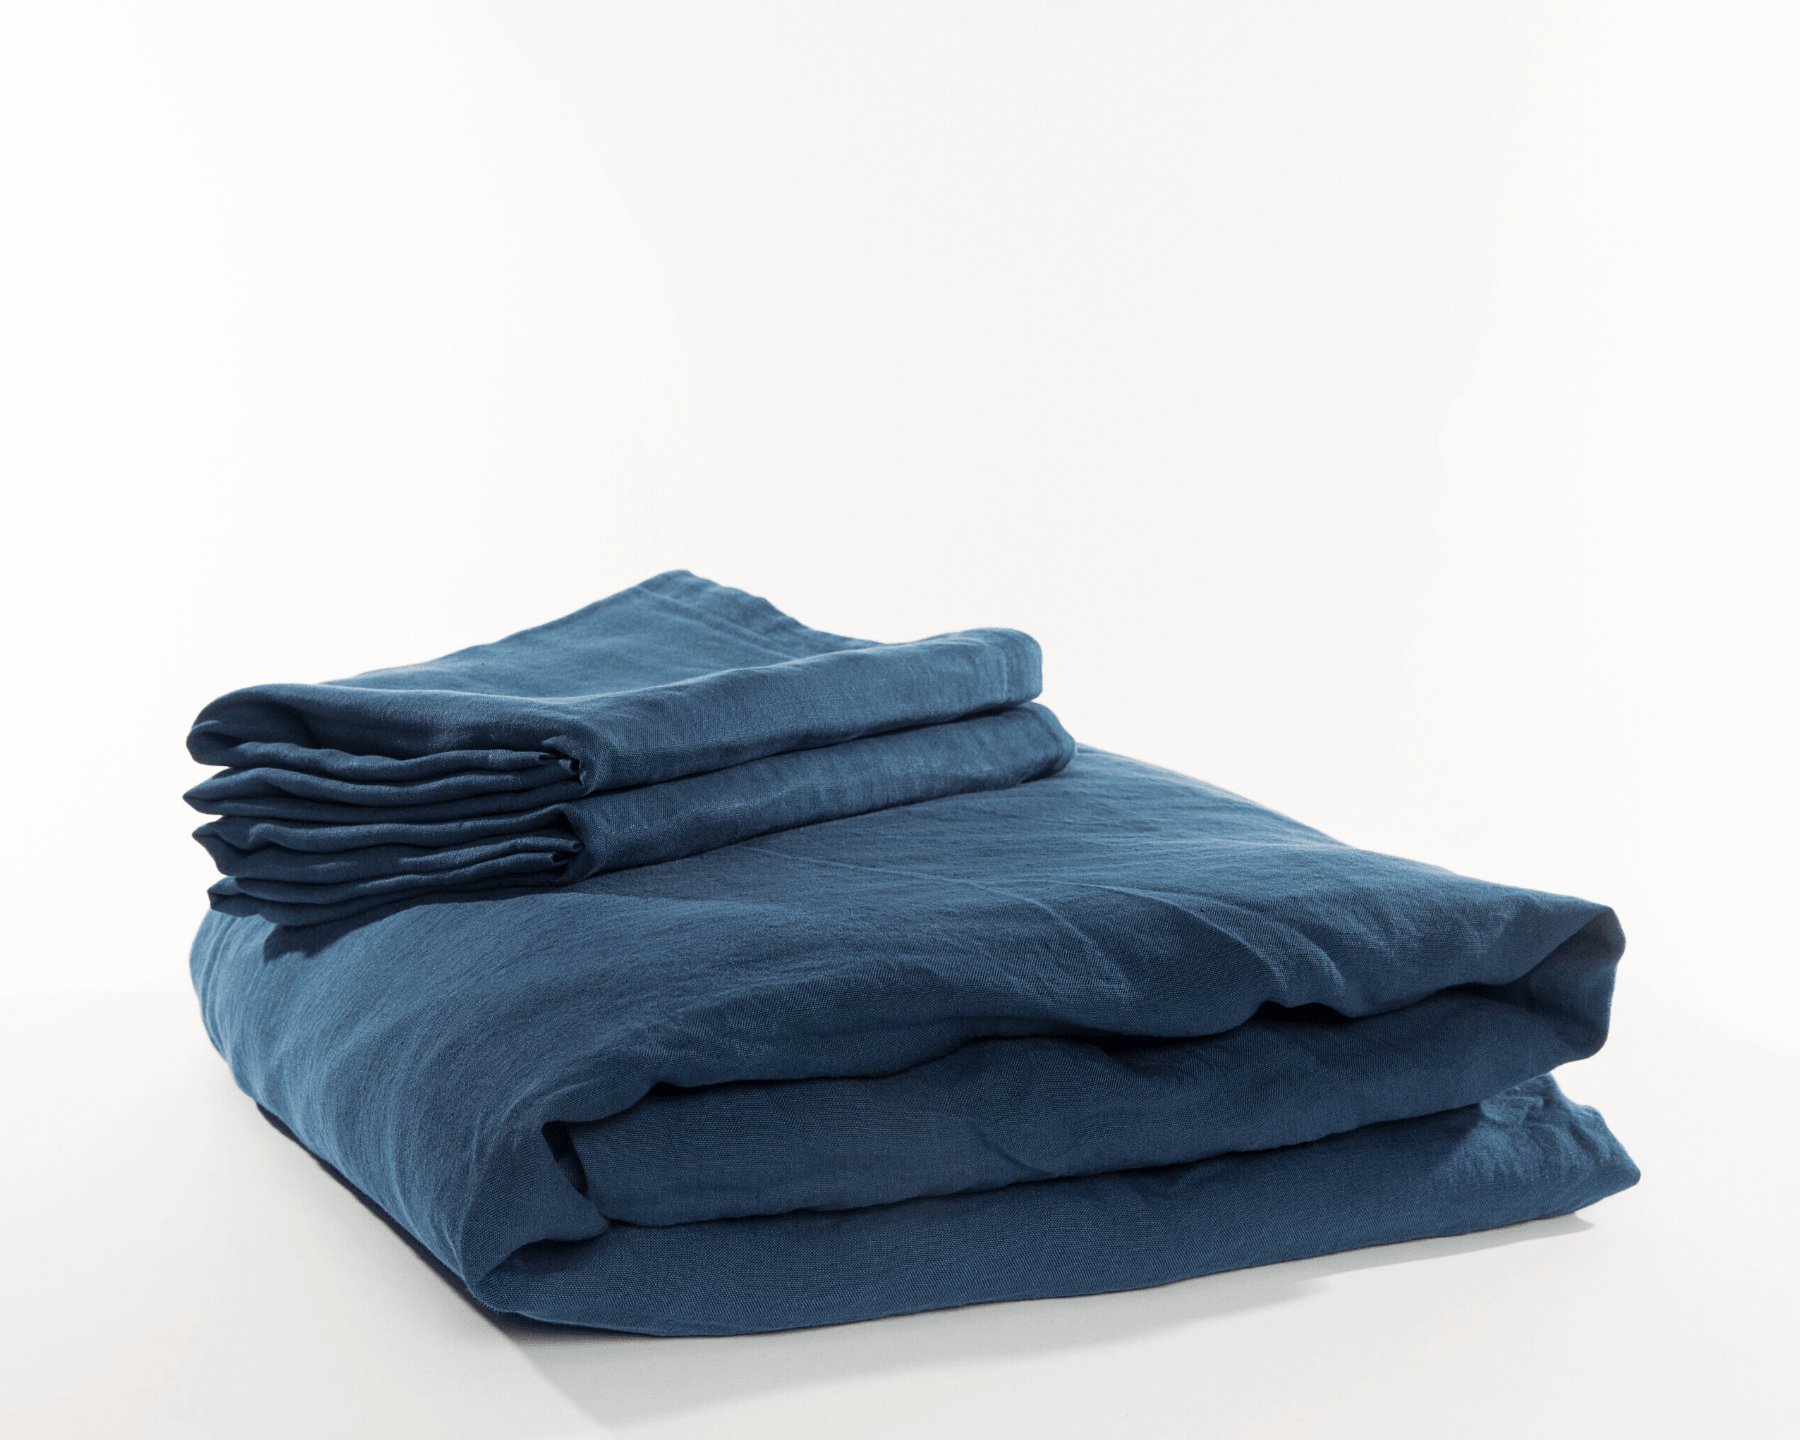 Navy blue organic European linen duvet cover set with two matching pillowcases - Blå (blue)